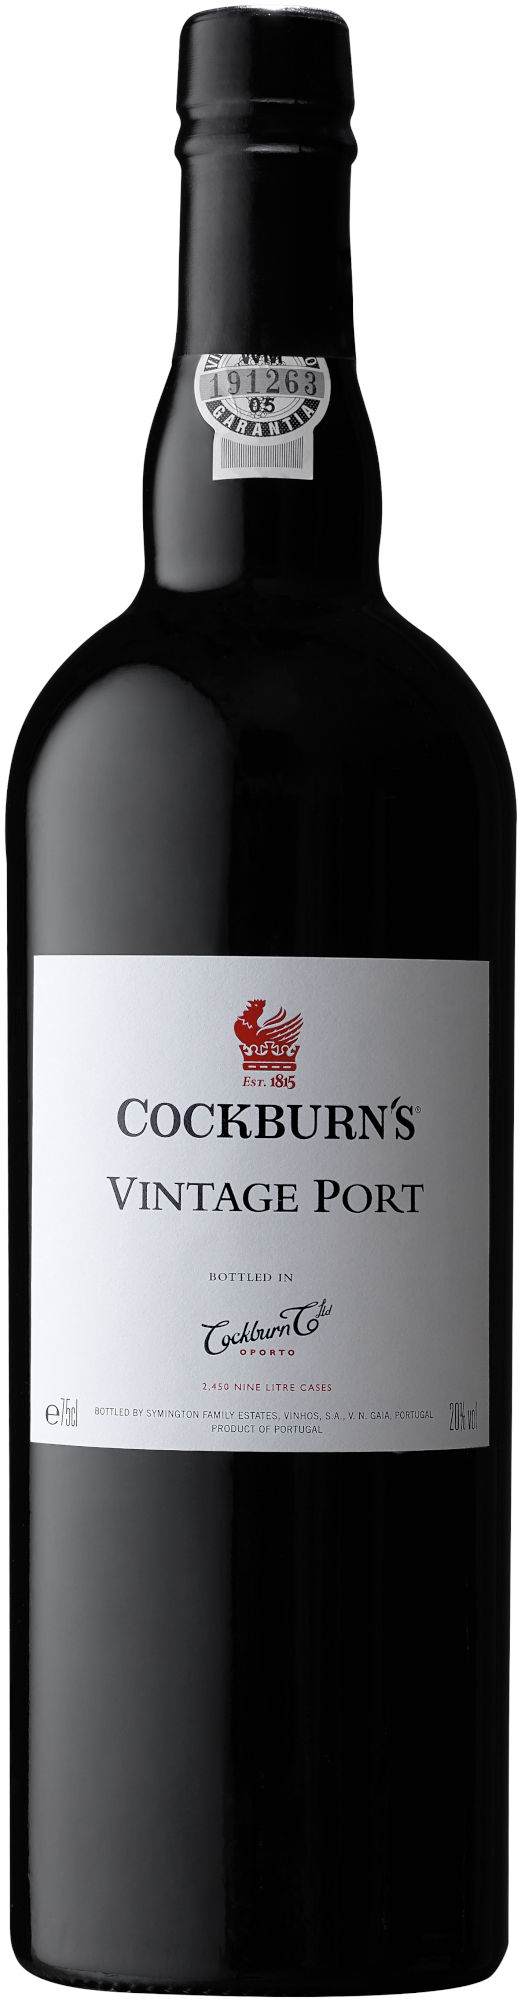 Cockburn-Vintage-Port